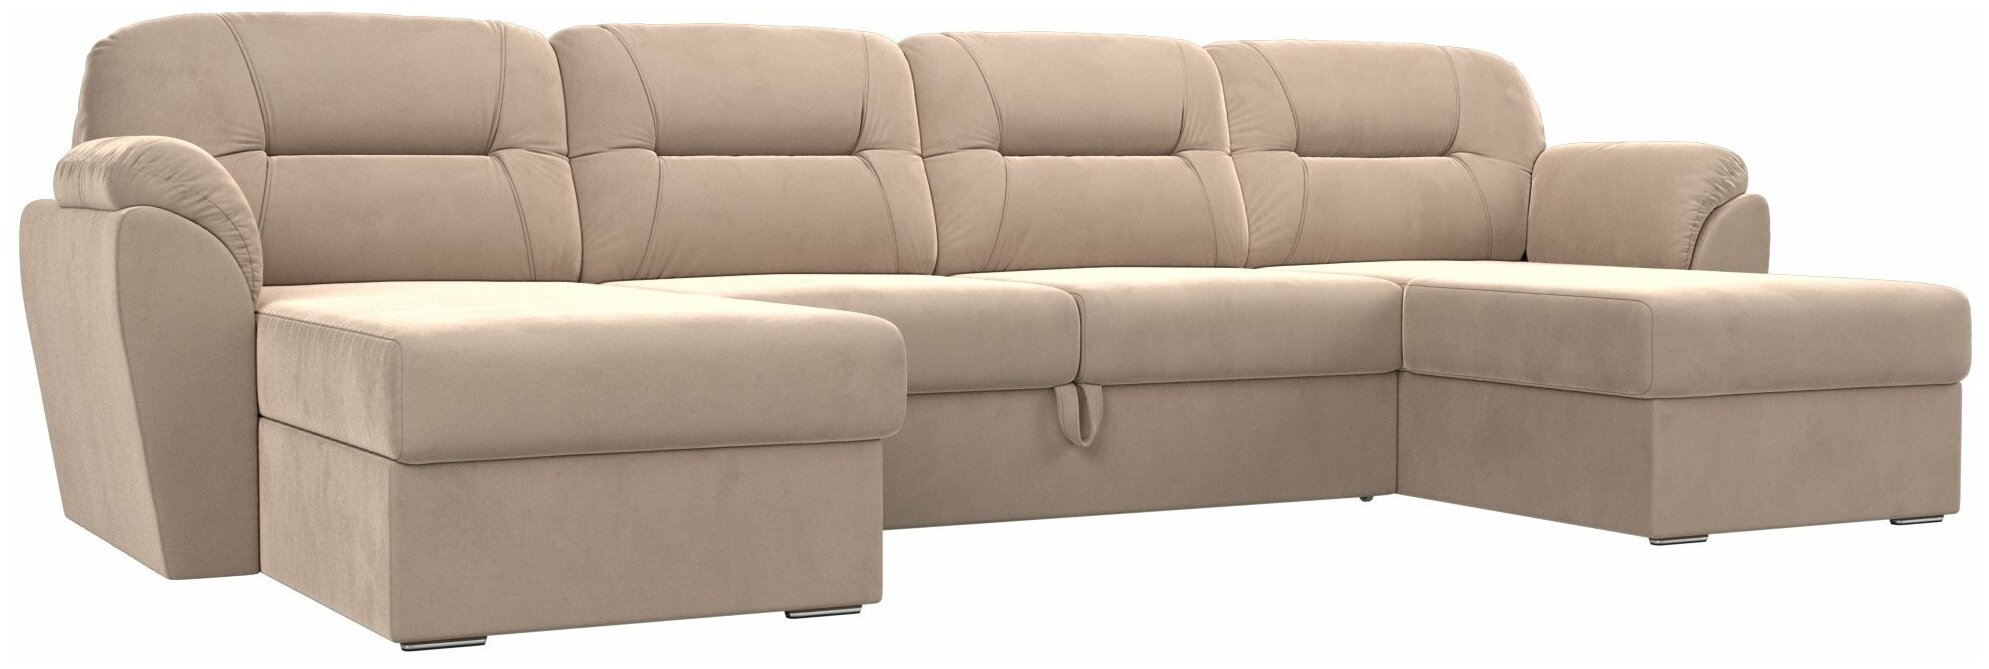 П-образный диван Бостон, Велюр, Модель 100545